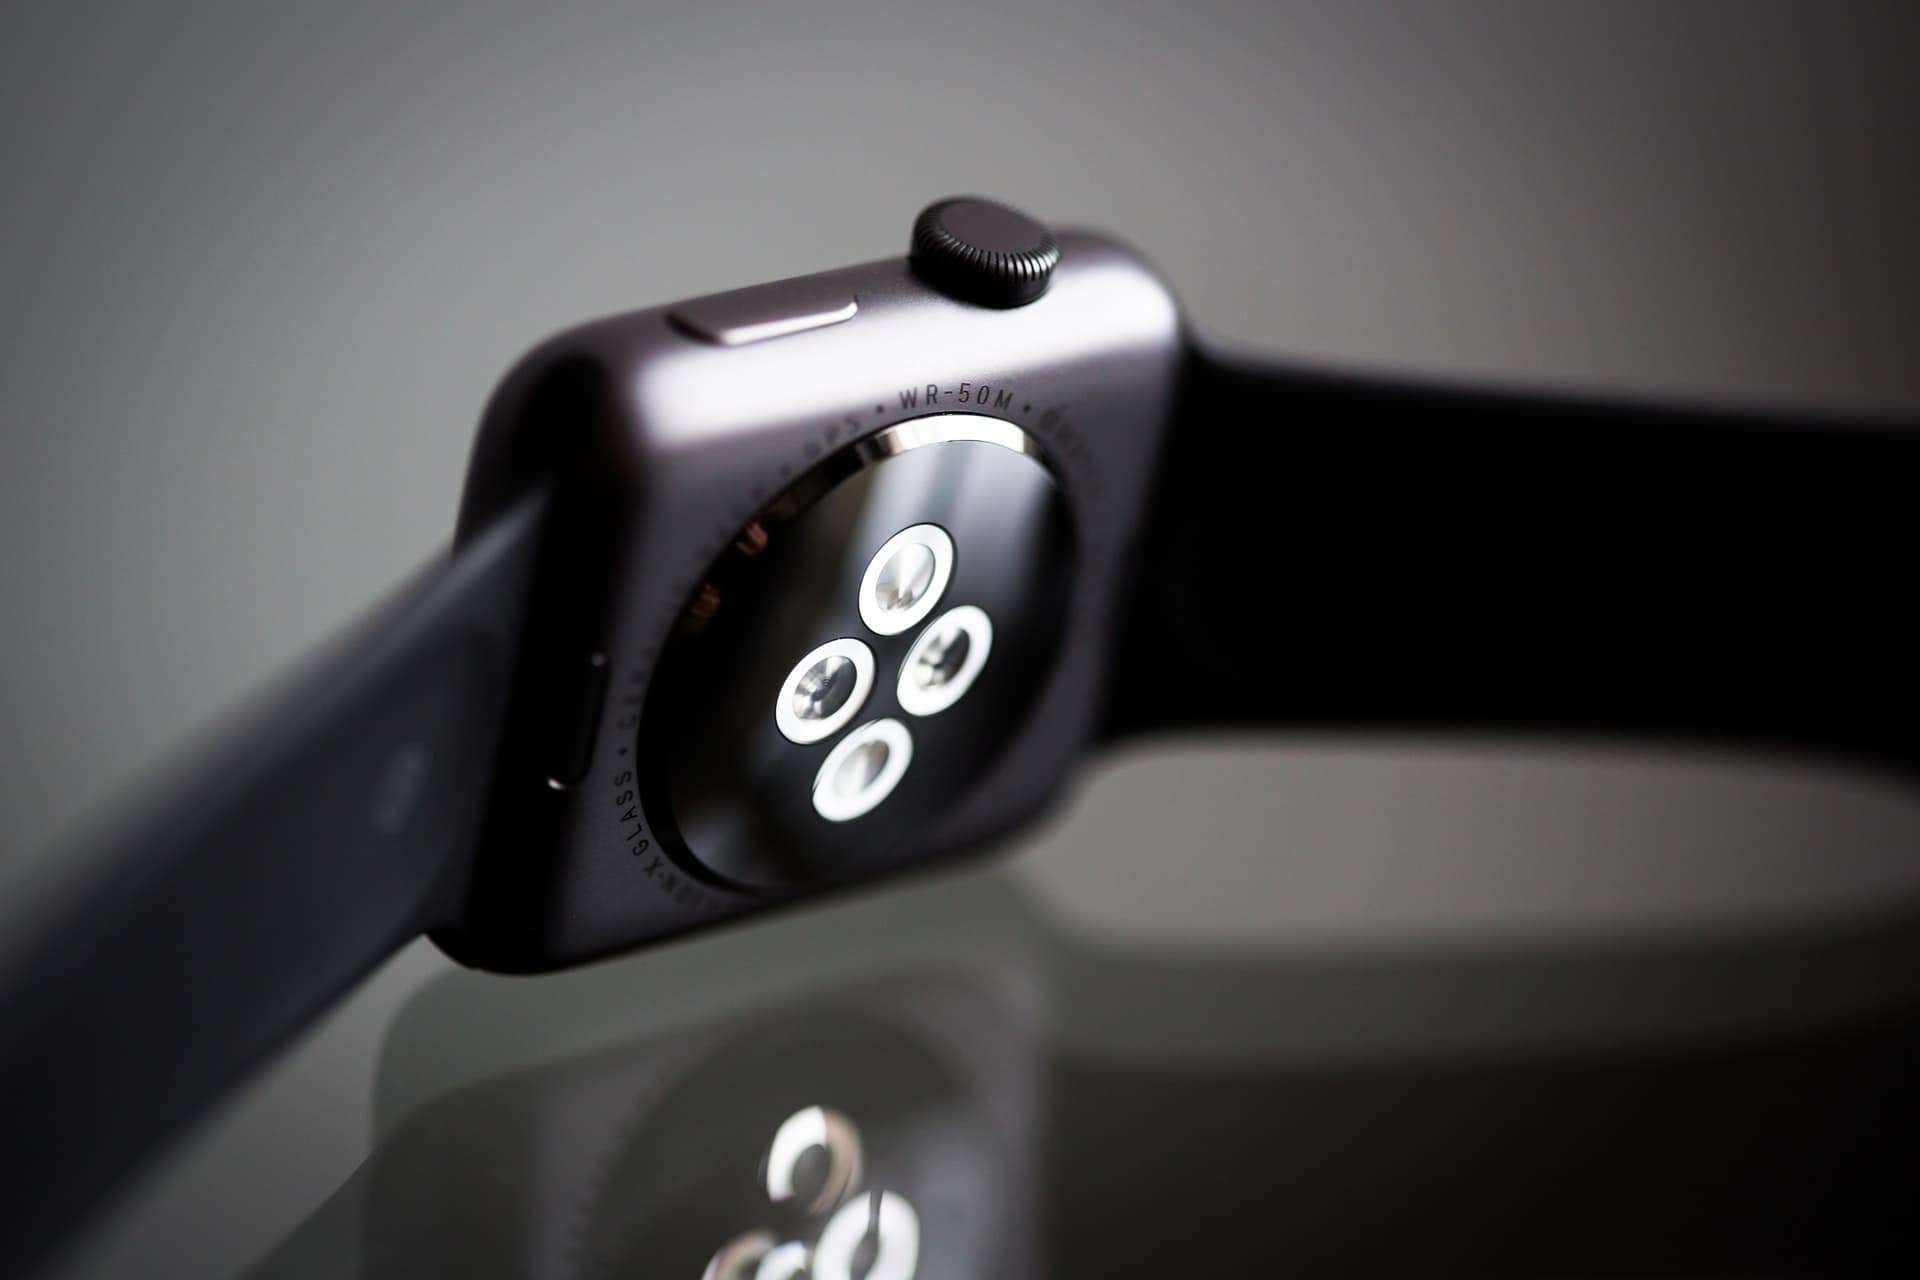 Apple Watch Offers